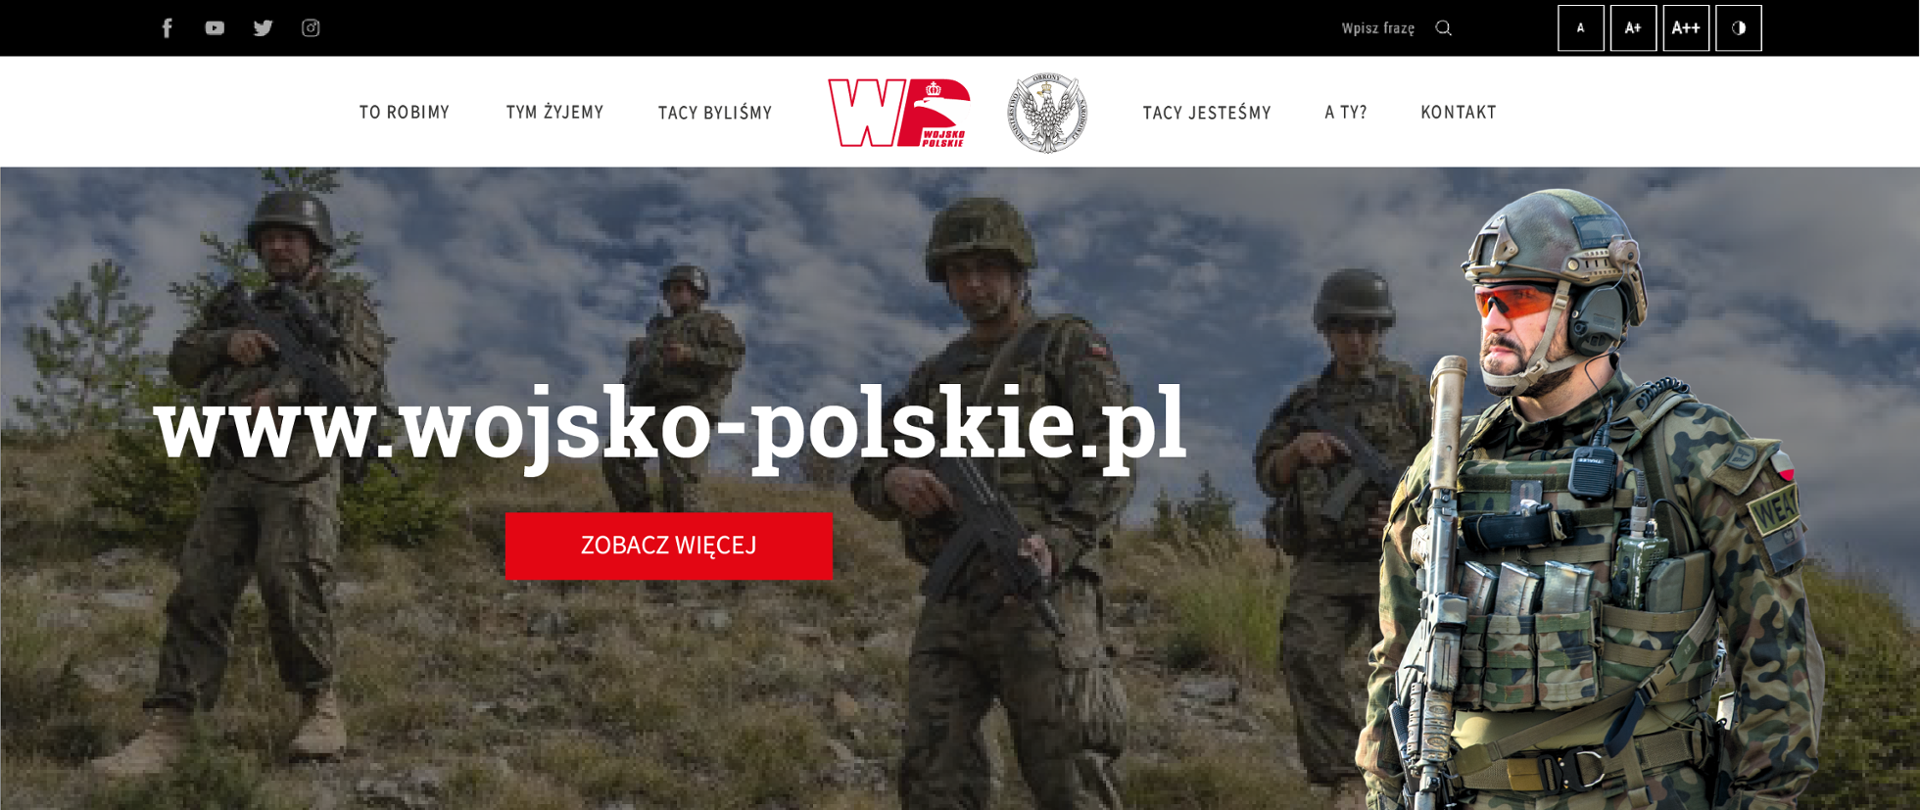 Nowa strona wojsko-polskie.pl